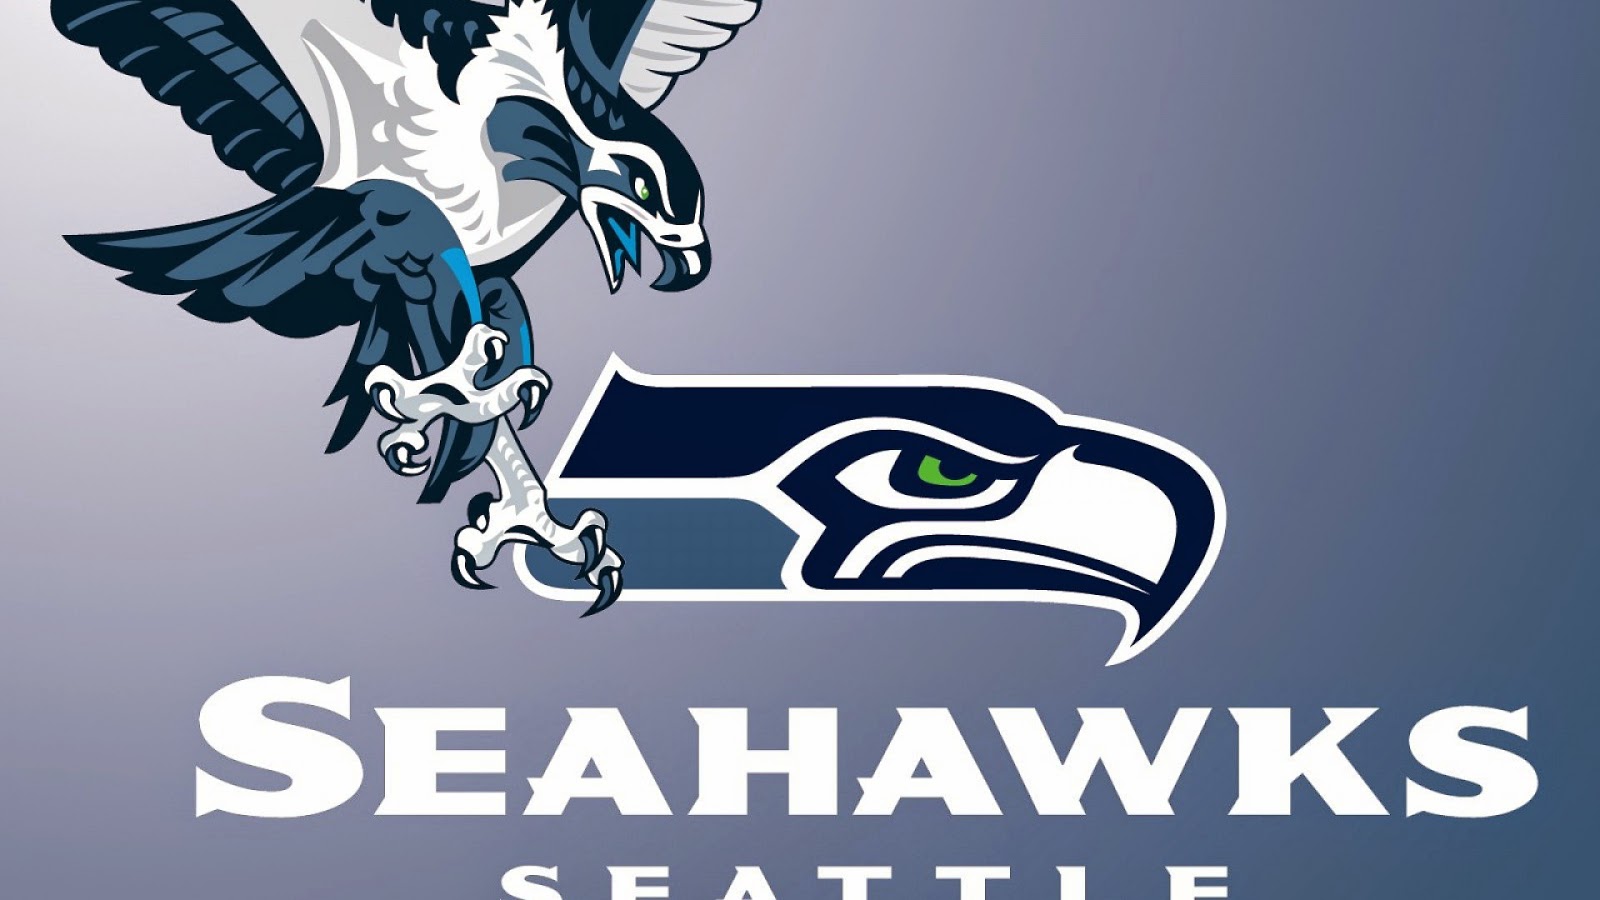 fondos de pantalla de logo de seahawks,águila,pájaro,fuente,ave de rapiña,gráficos